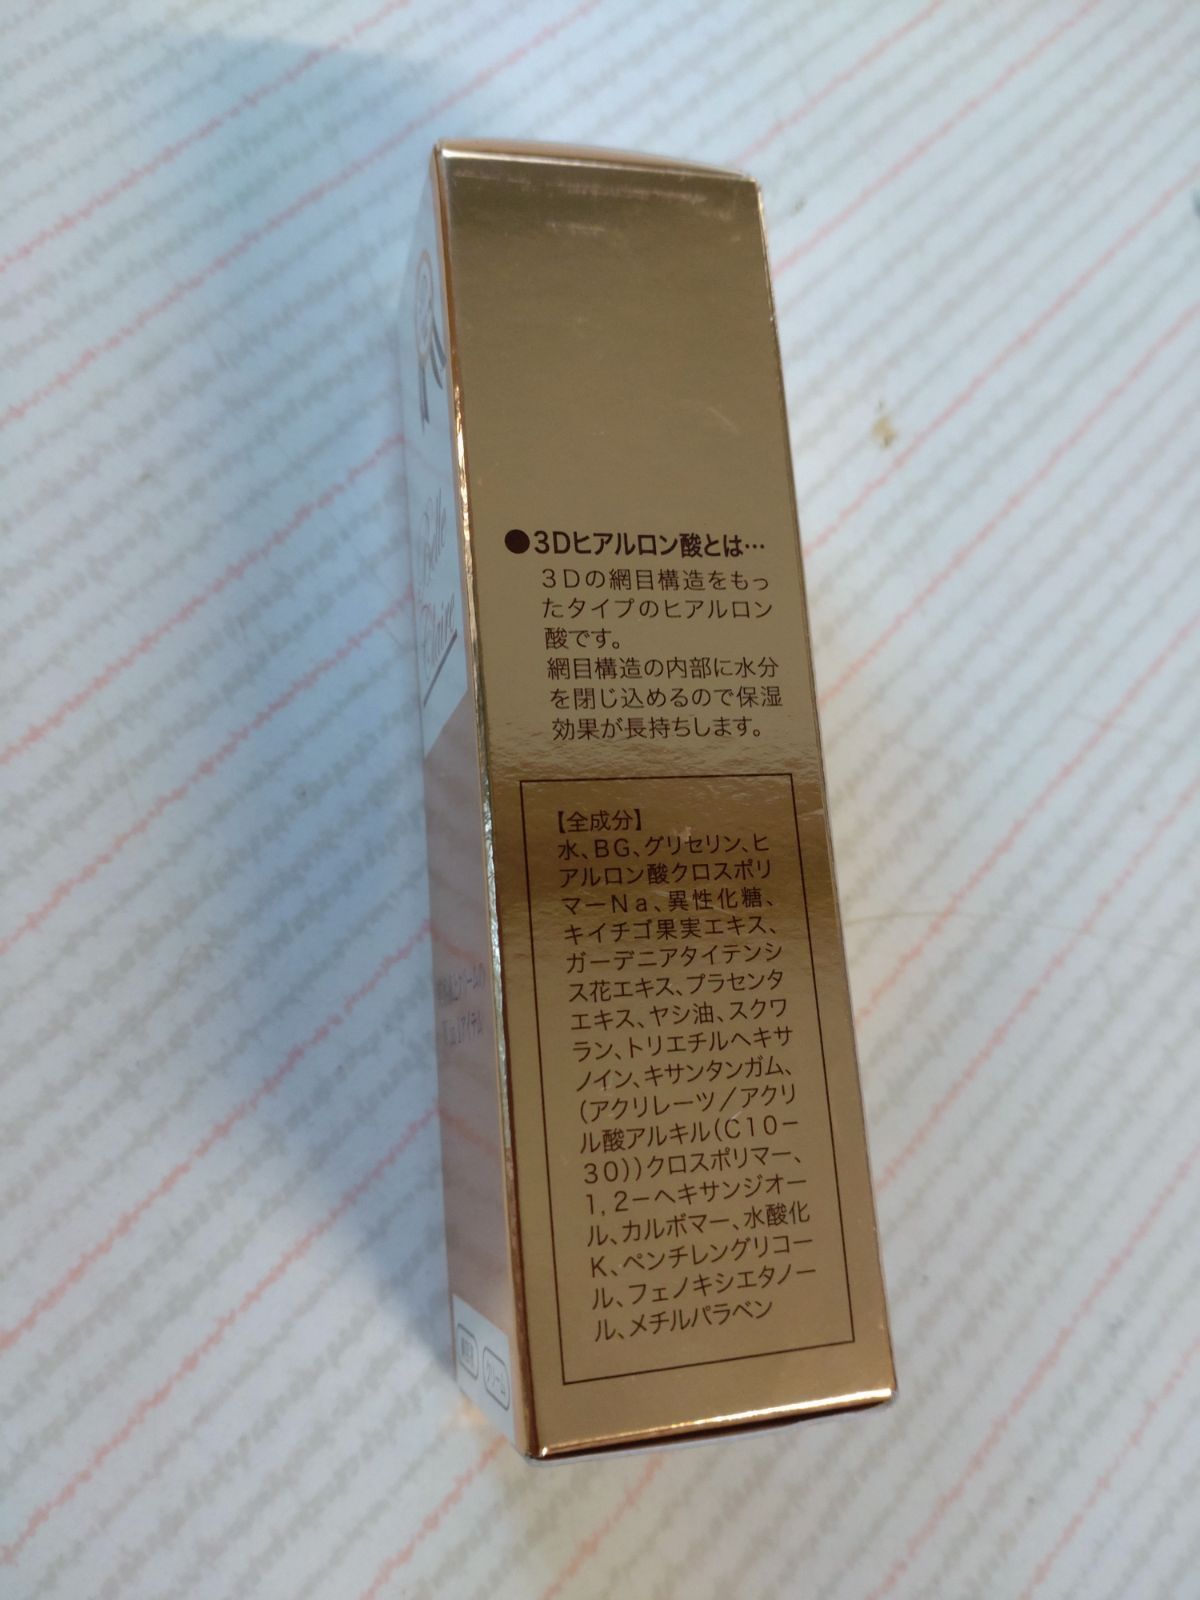 ベルクレール E&C 美容液 30mL 定価12000円 - スーちゃんハウス - メルカリ